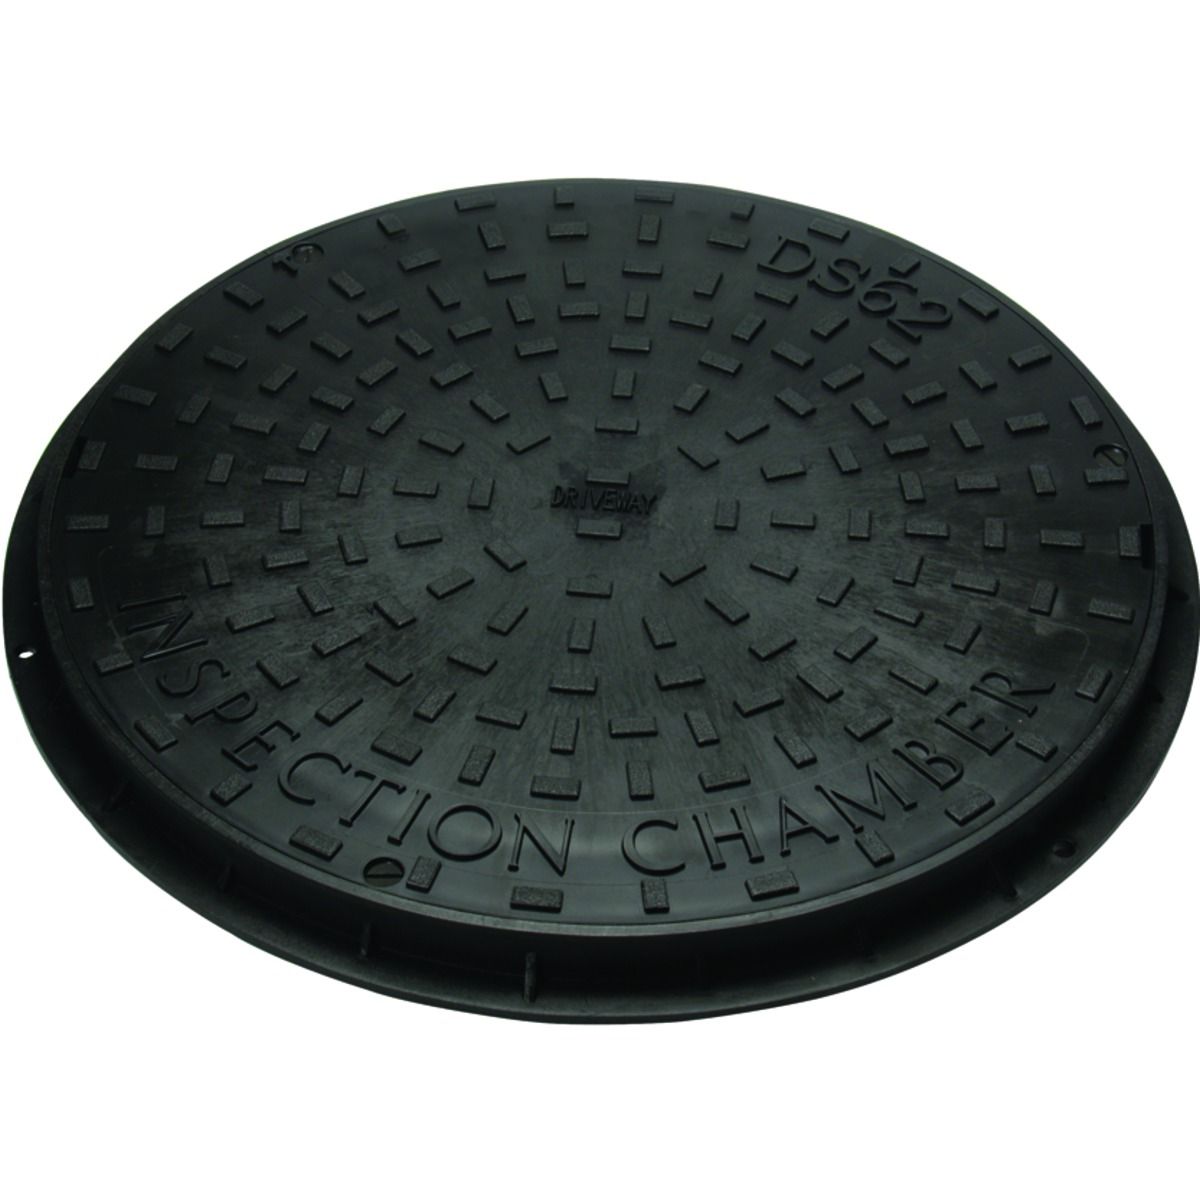 Image of Clark-drain Round 3.5 Ton Plastic Manhole Cover & Frame 450mm Diameter